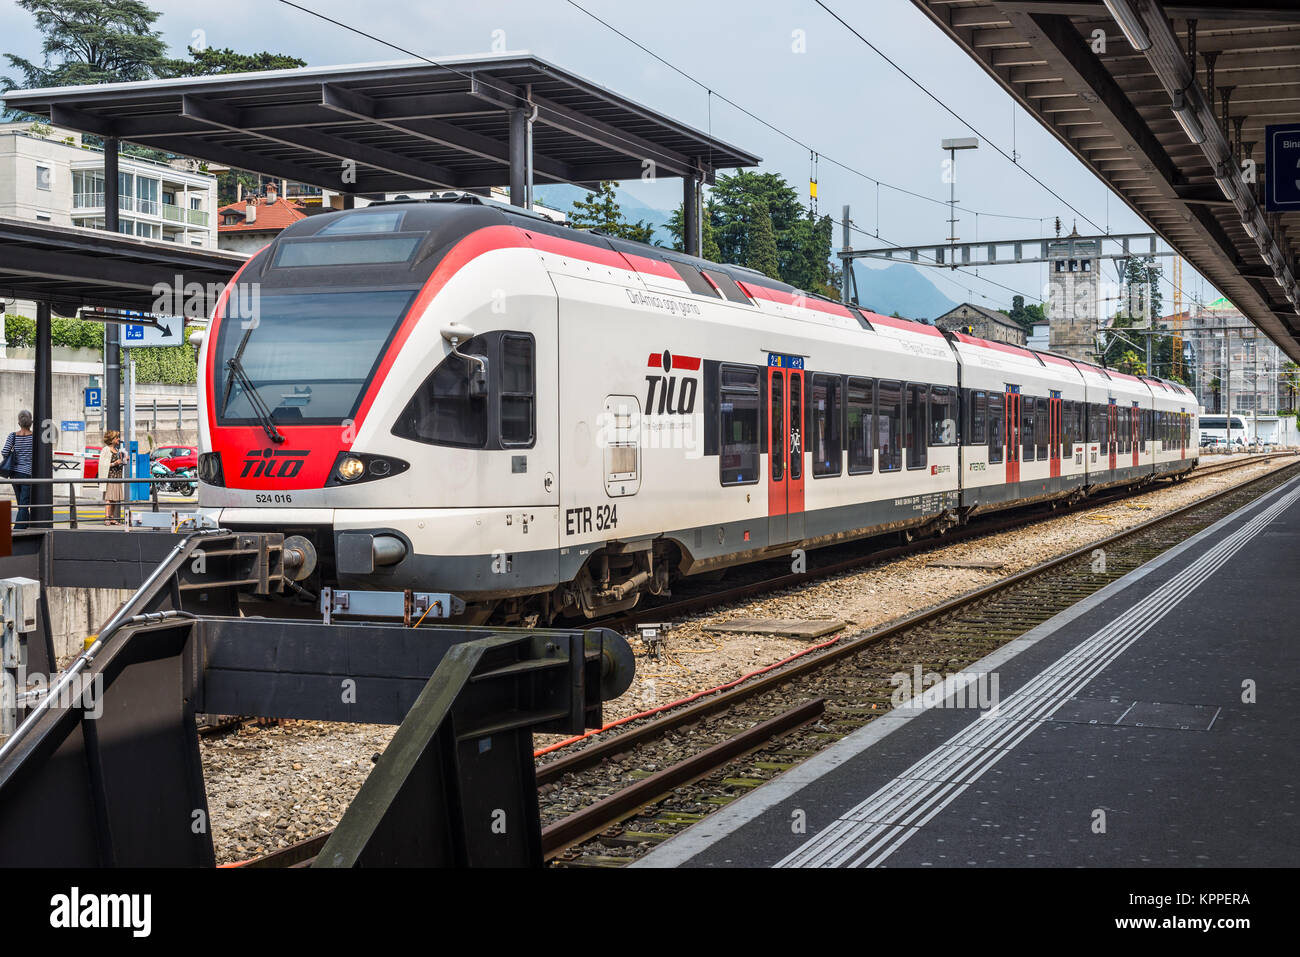 Locarno, Schweiz - 28. Mai 2016: ein Personenzug der TILO (Regionalbahn Tessin Lombardei) auf einer Plattform der Locarno Bahnhof. Stockfoto